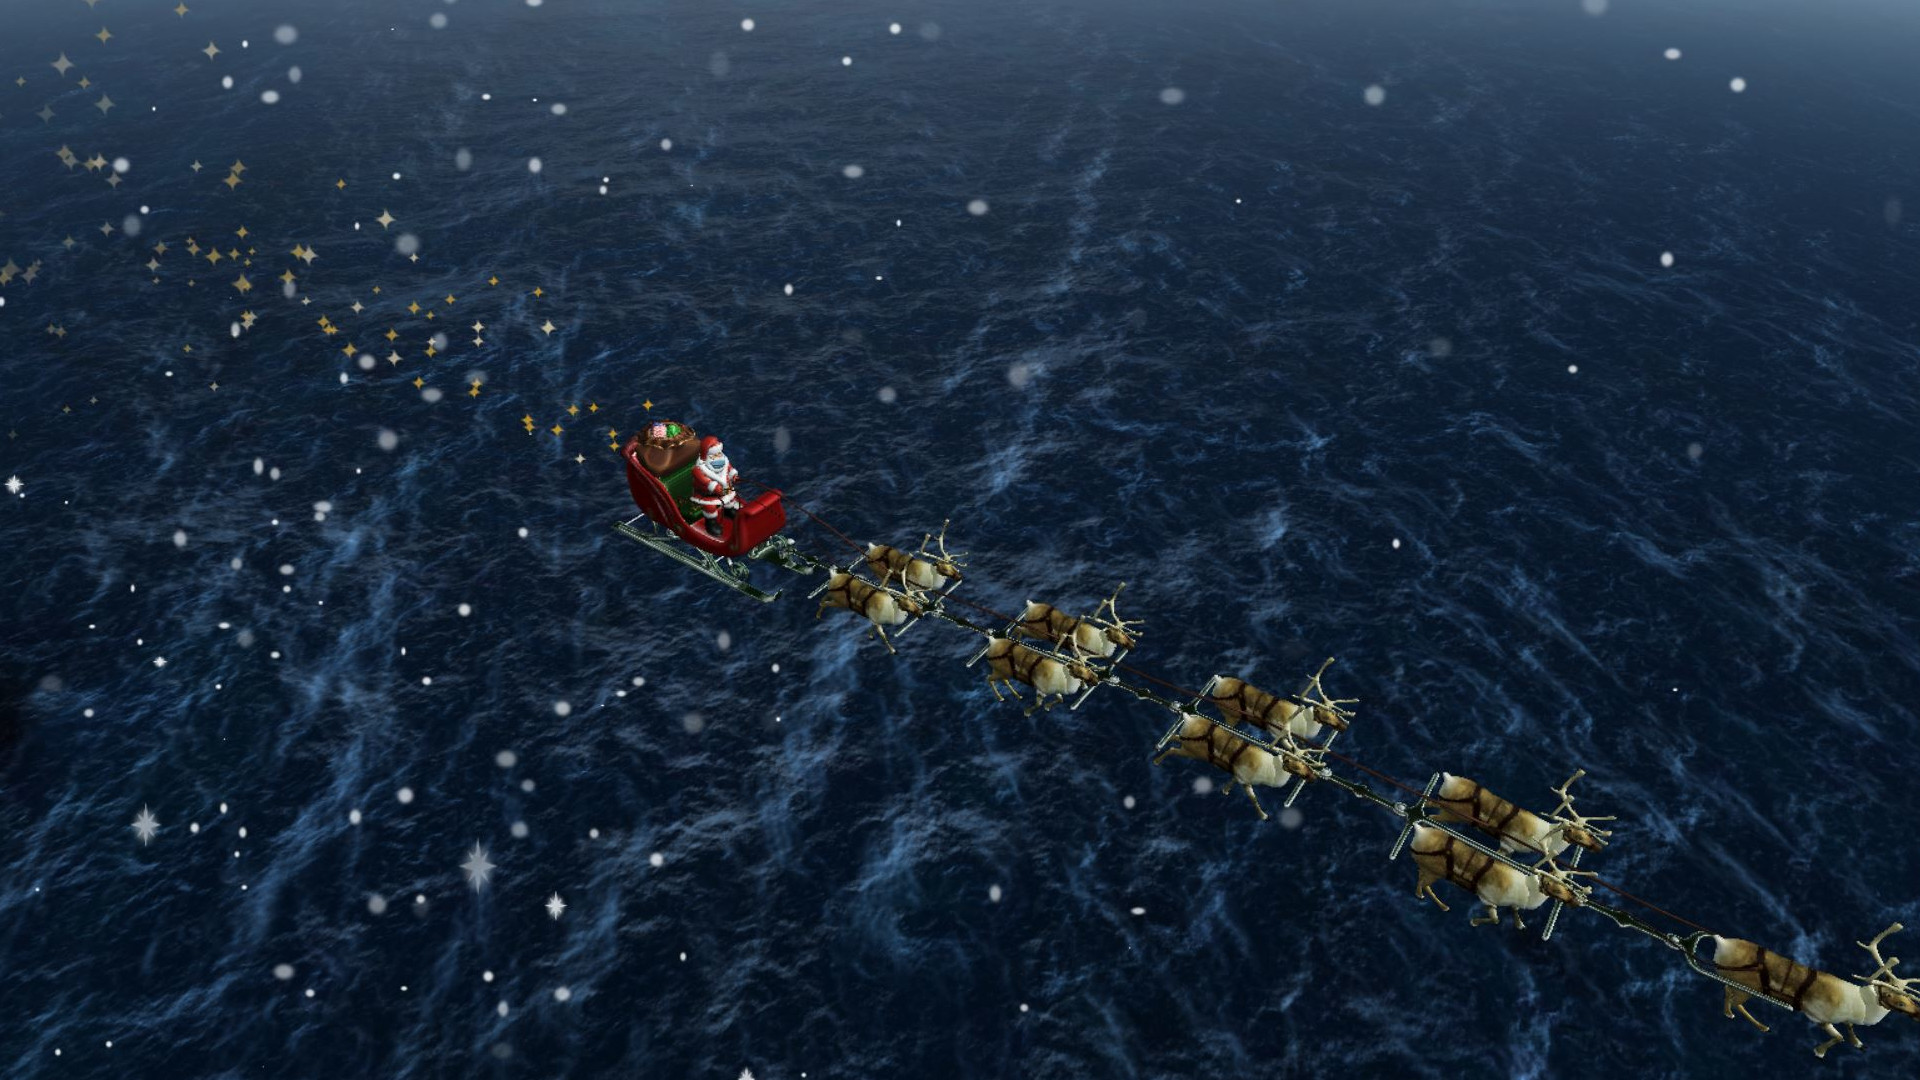 Santa on the NORAD Santa tracker